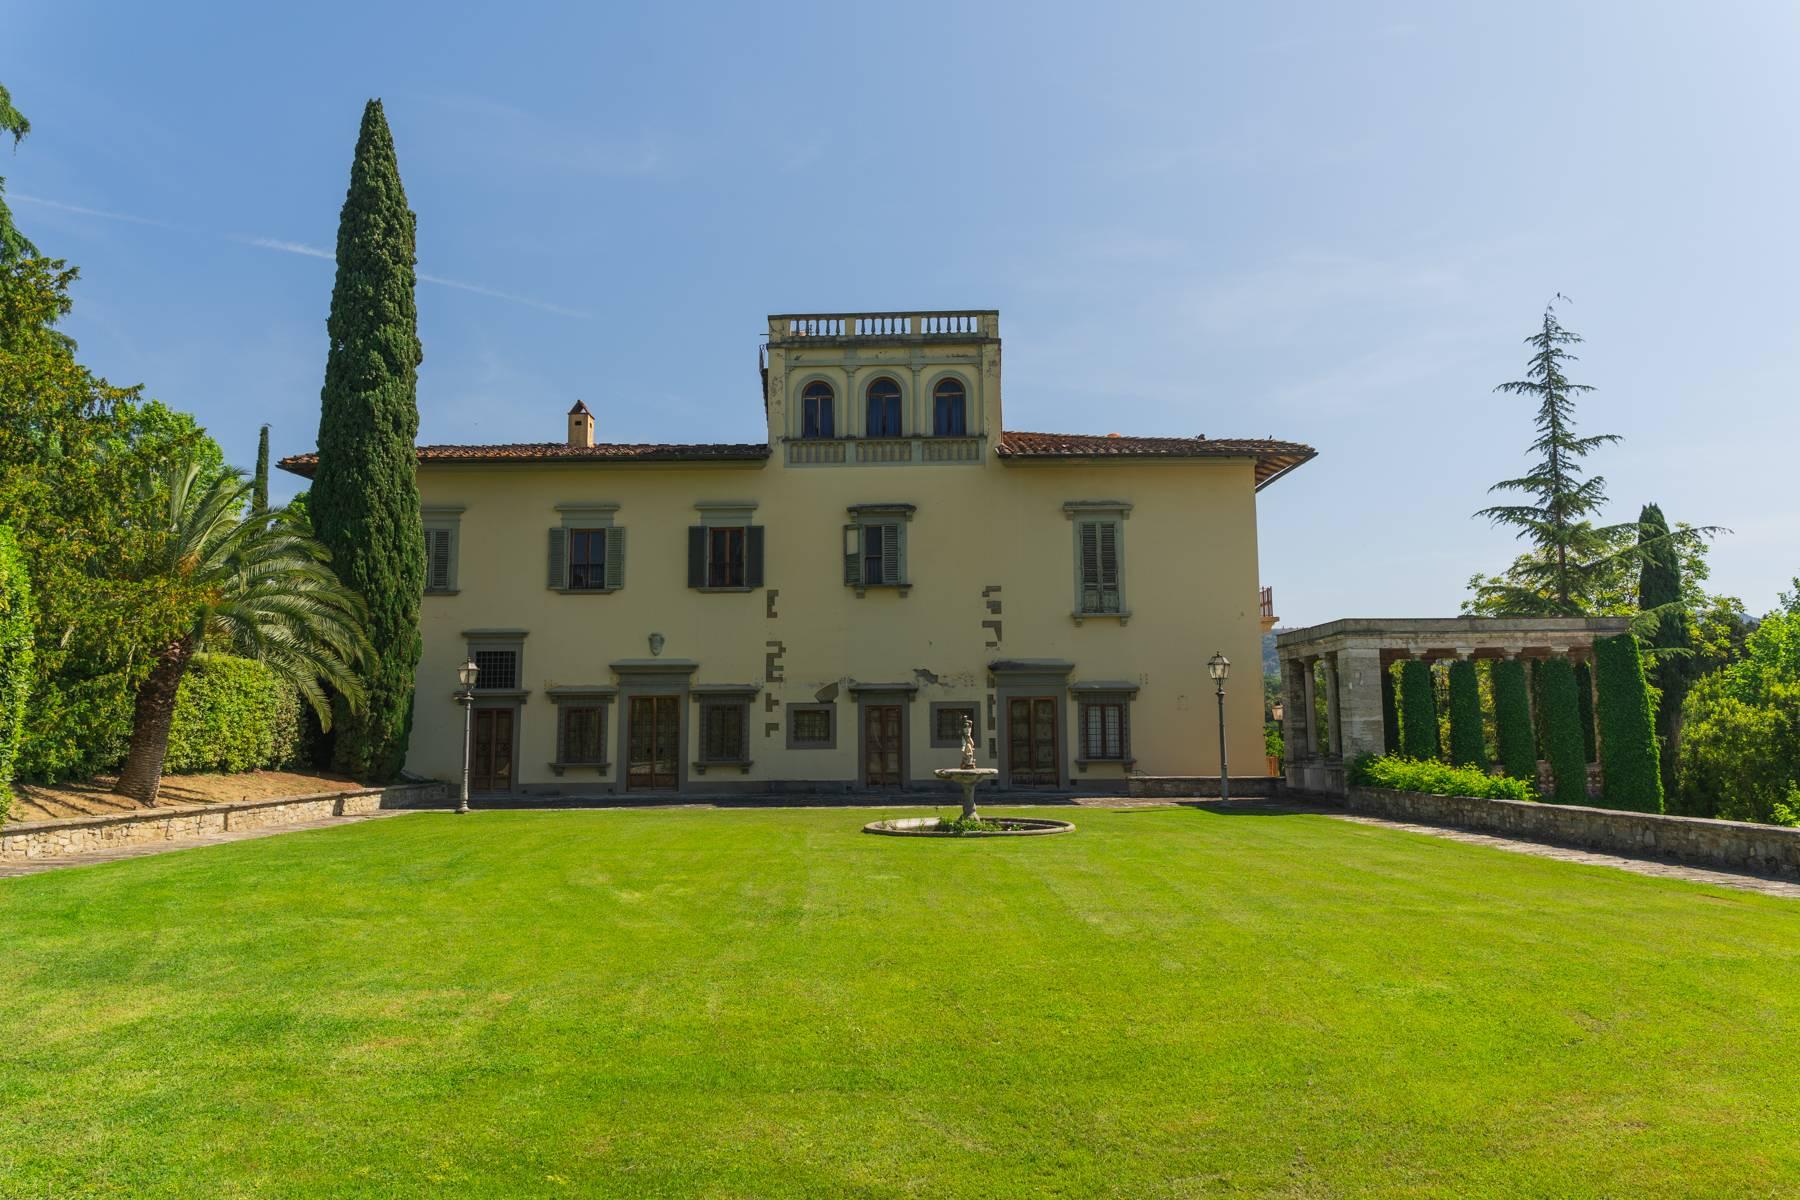 Elegante Villa aus dem 14. Jahrhundert mit einem Hektar Park in Florenz - 4